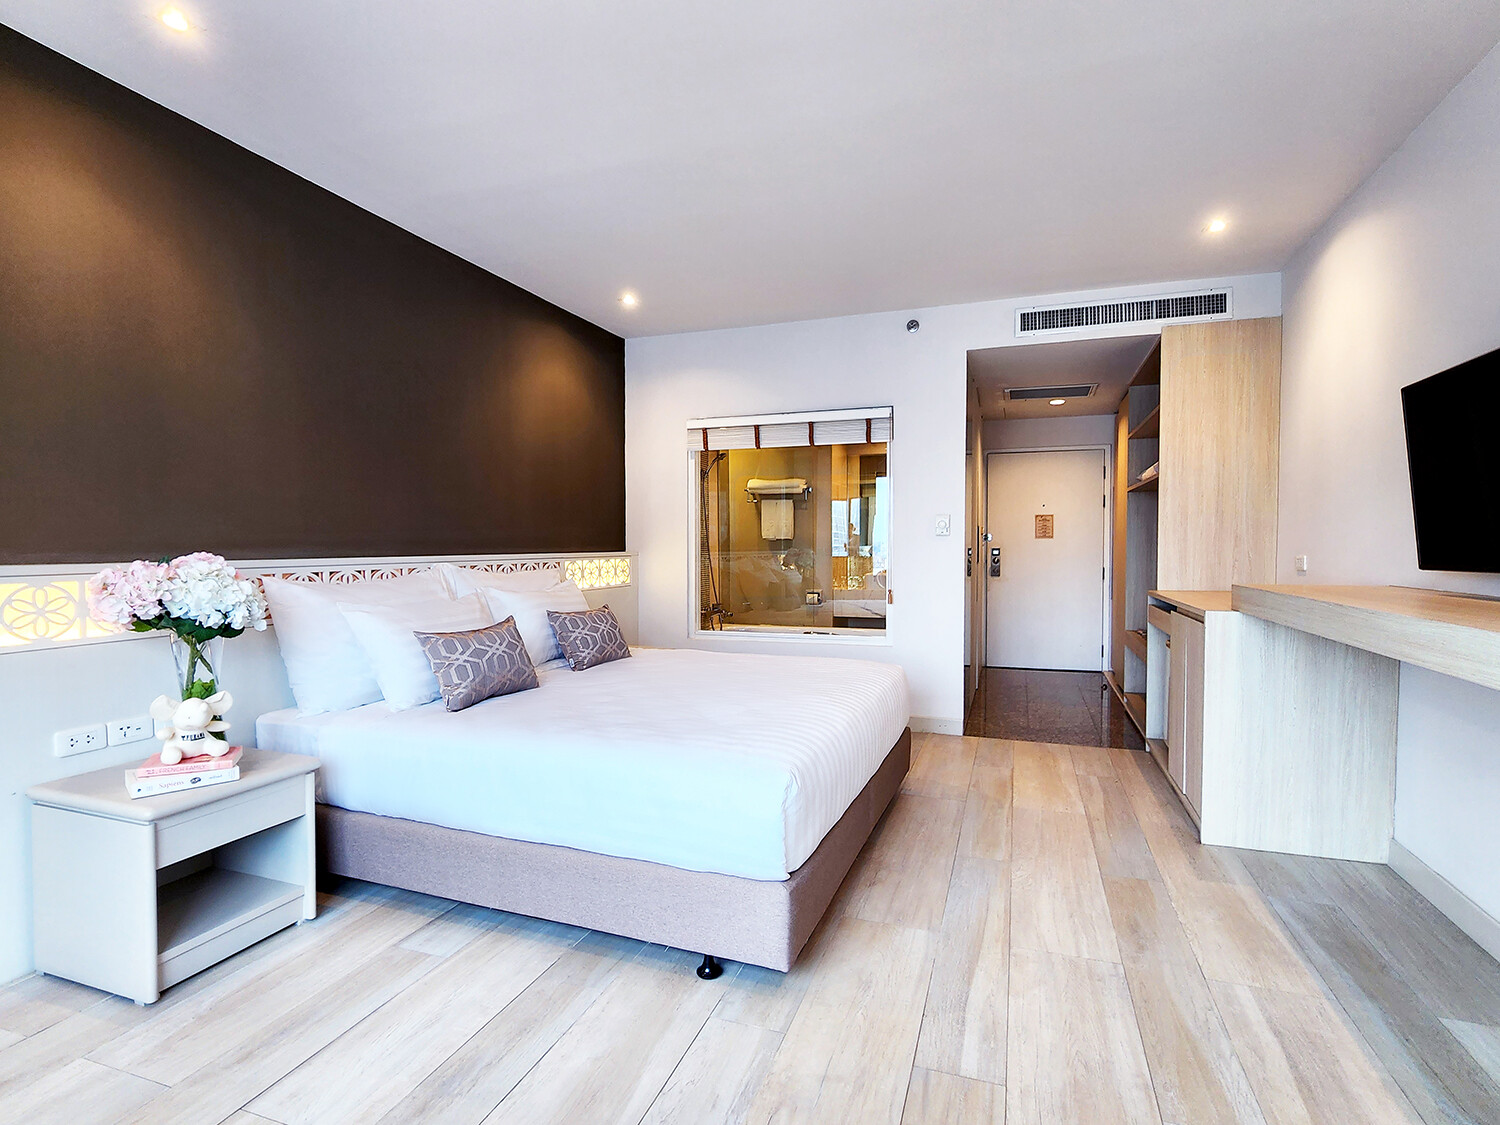 โรงแรมล่าสุดใจกลางประตูน้ำภายใต้การบริหารโดยแบรนด์ฟูราม่าจากประเทศสิงคโปร์